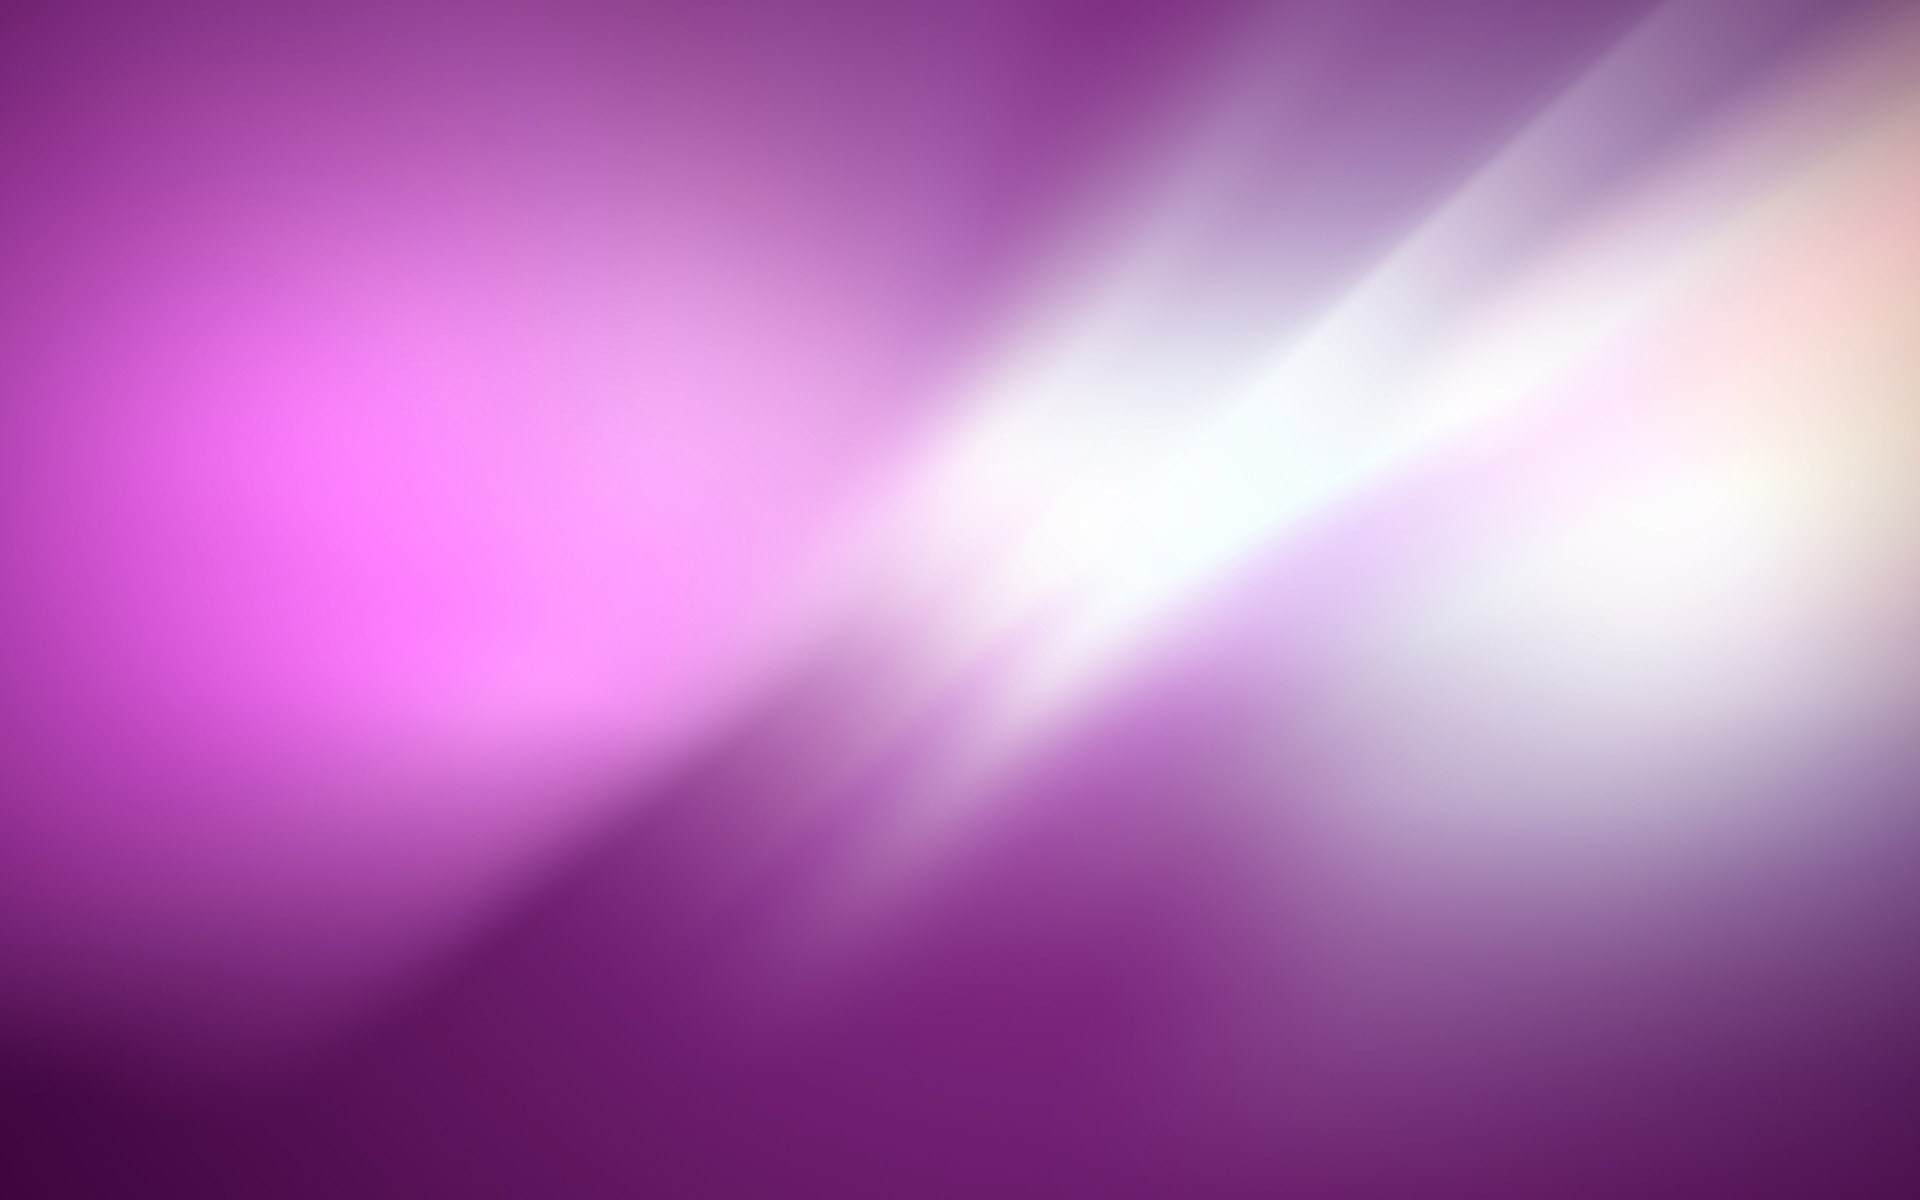 wallpaper cores,violet,purple,pink,blue,lilac